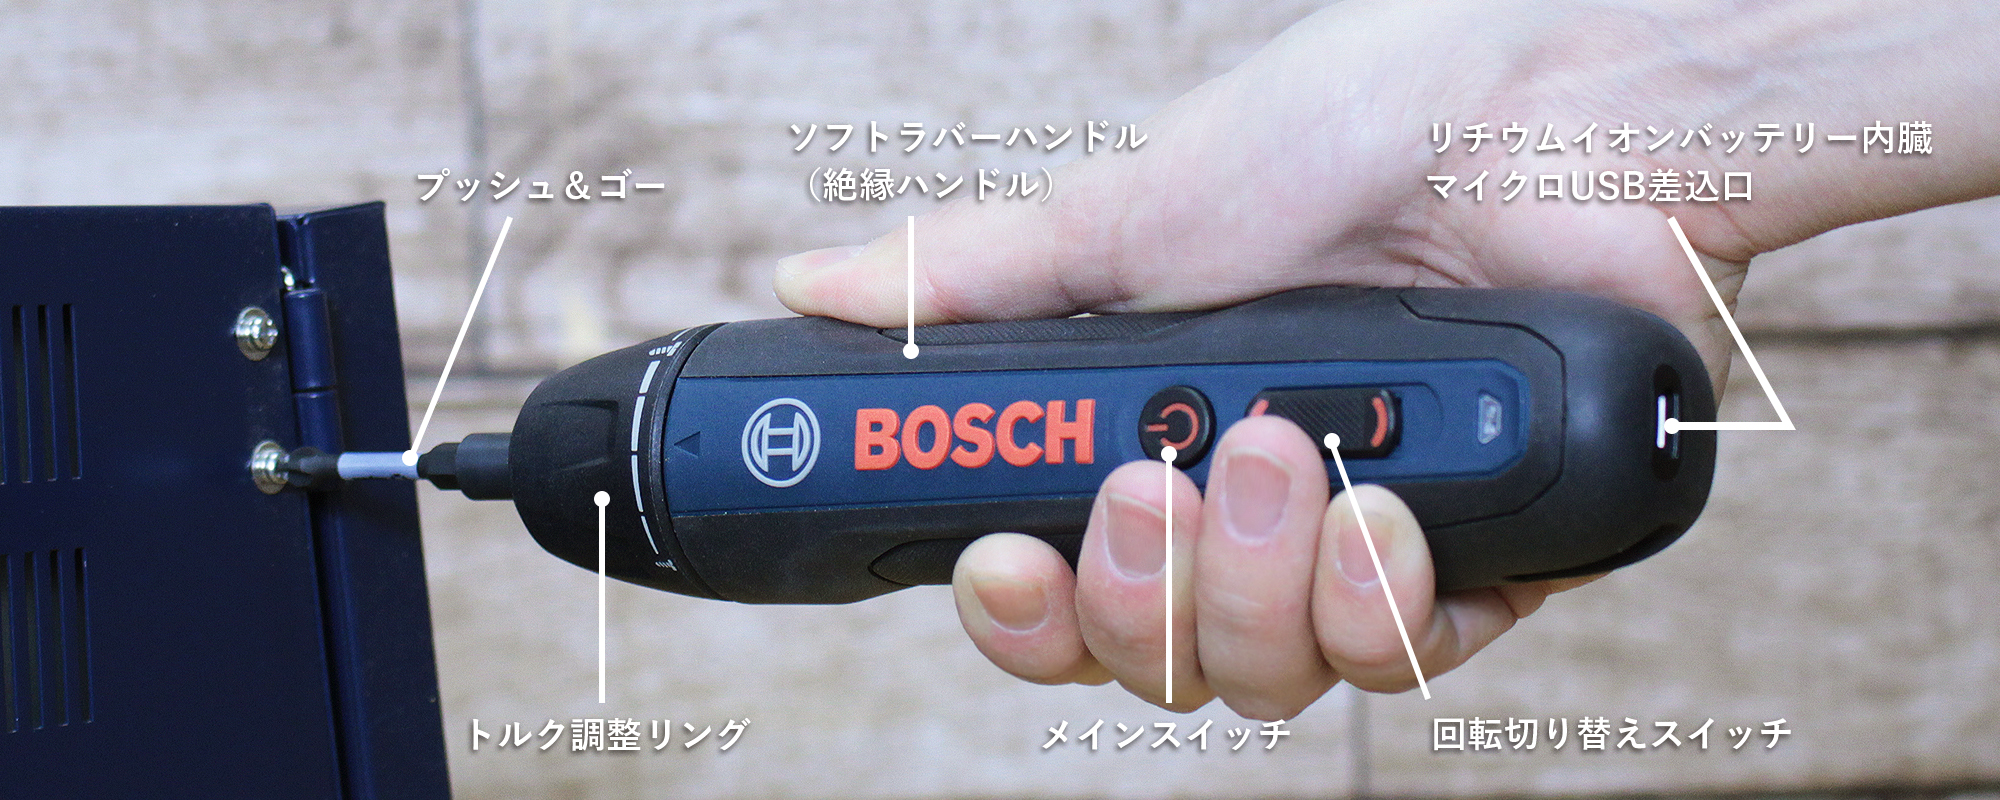 BoschGoの特徴